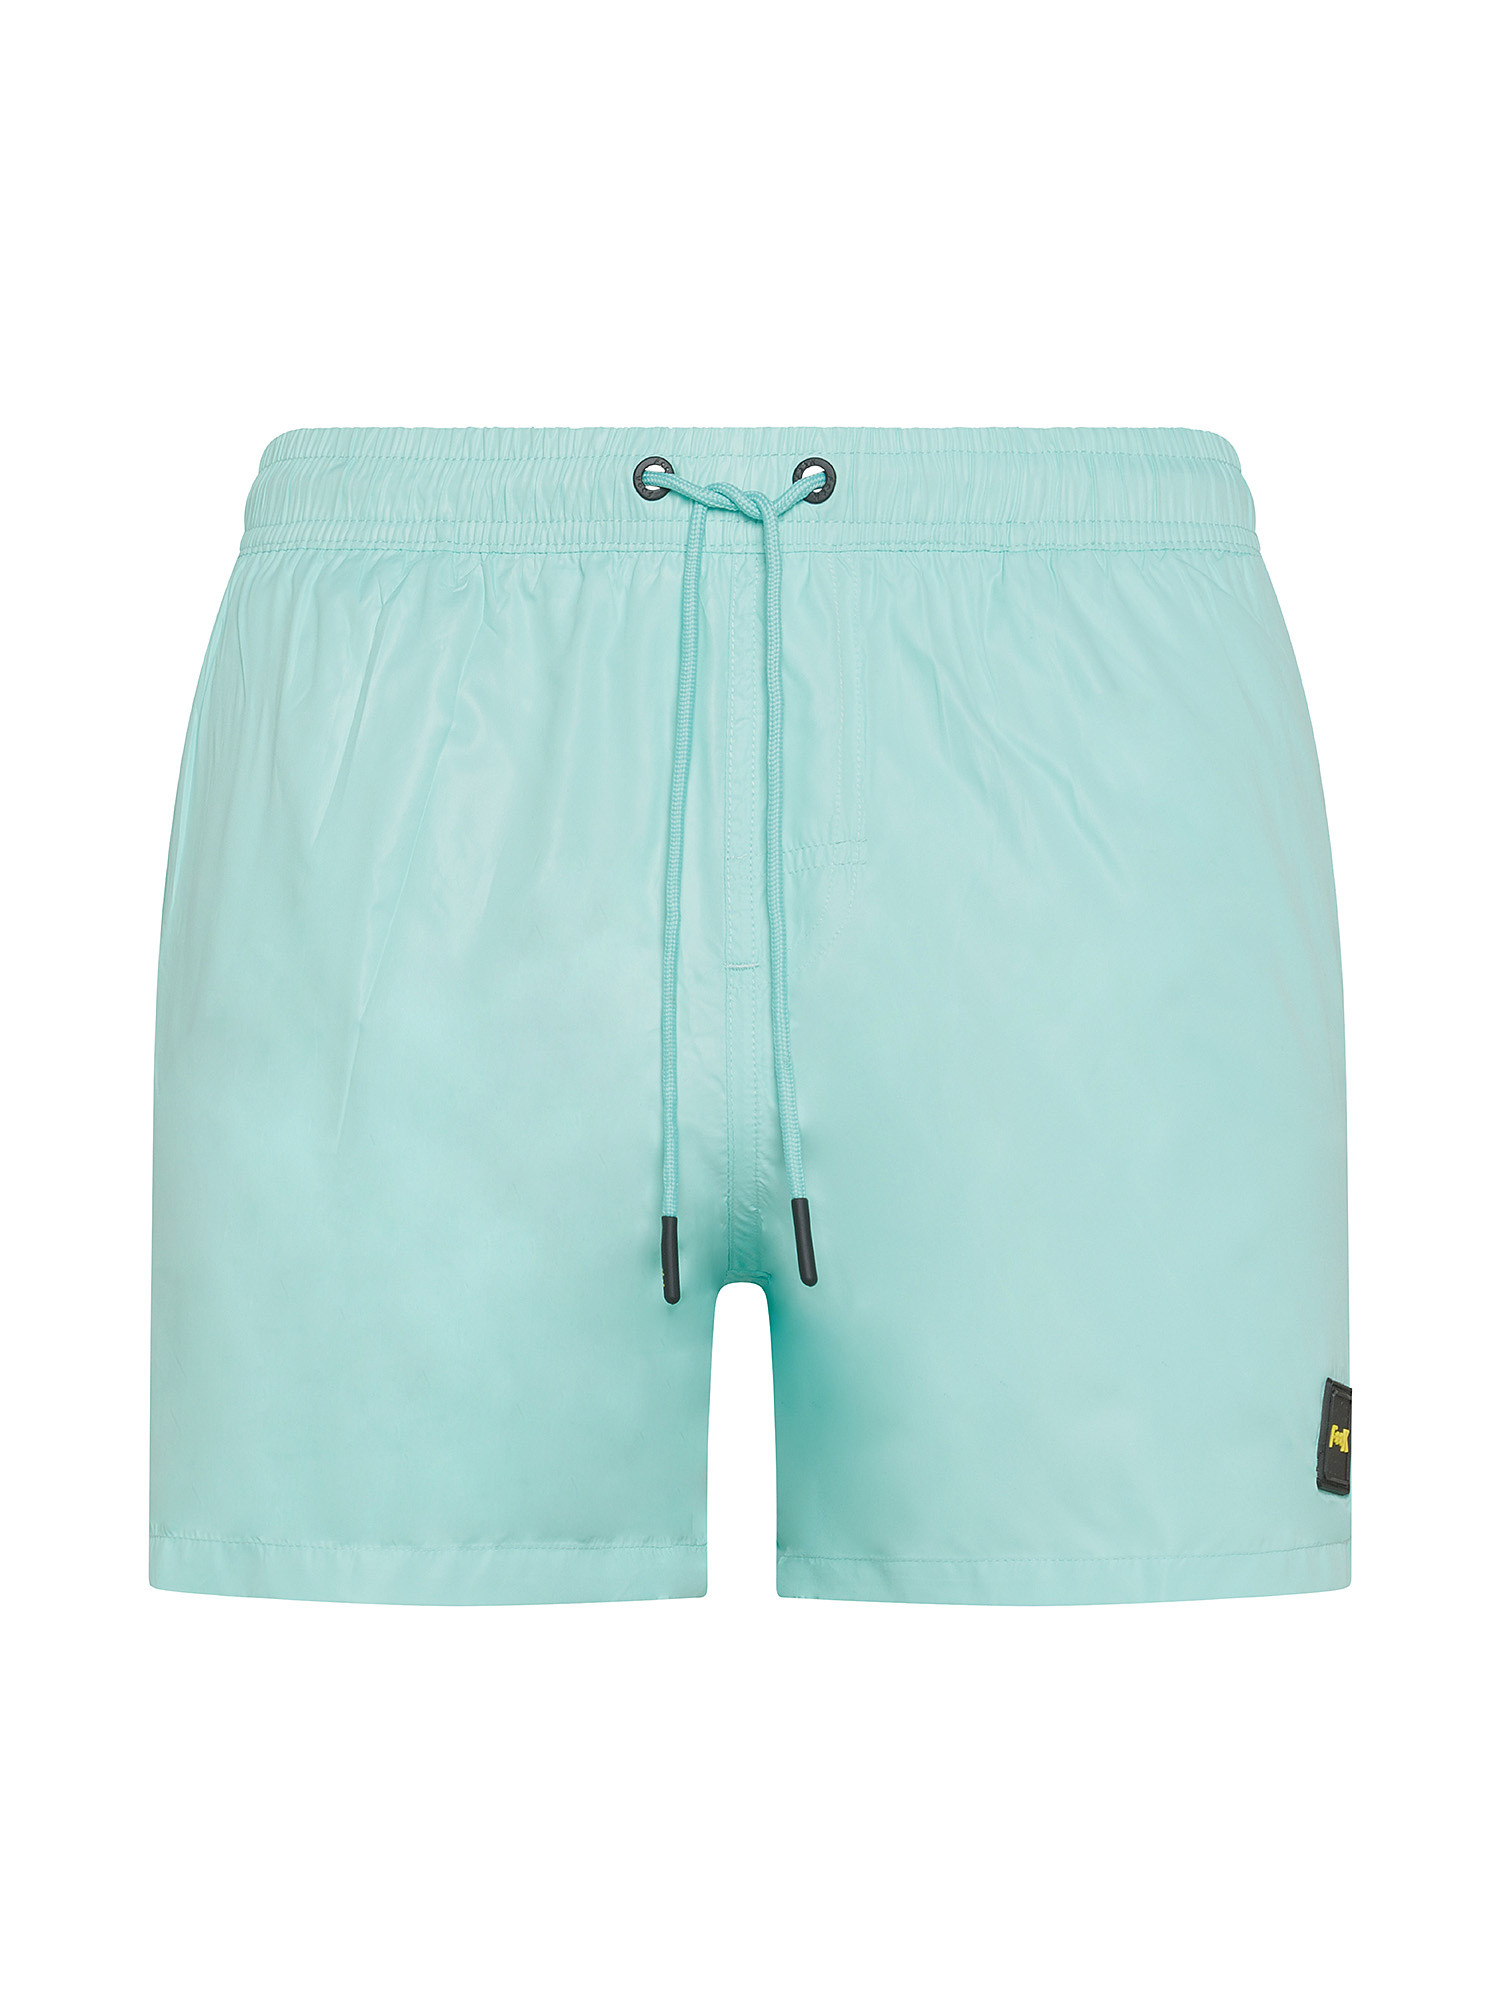 F**K - Shiny swim shorts, Light Blue, large image number 0